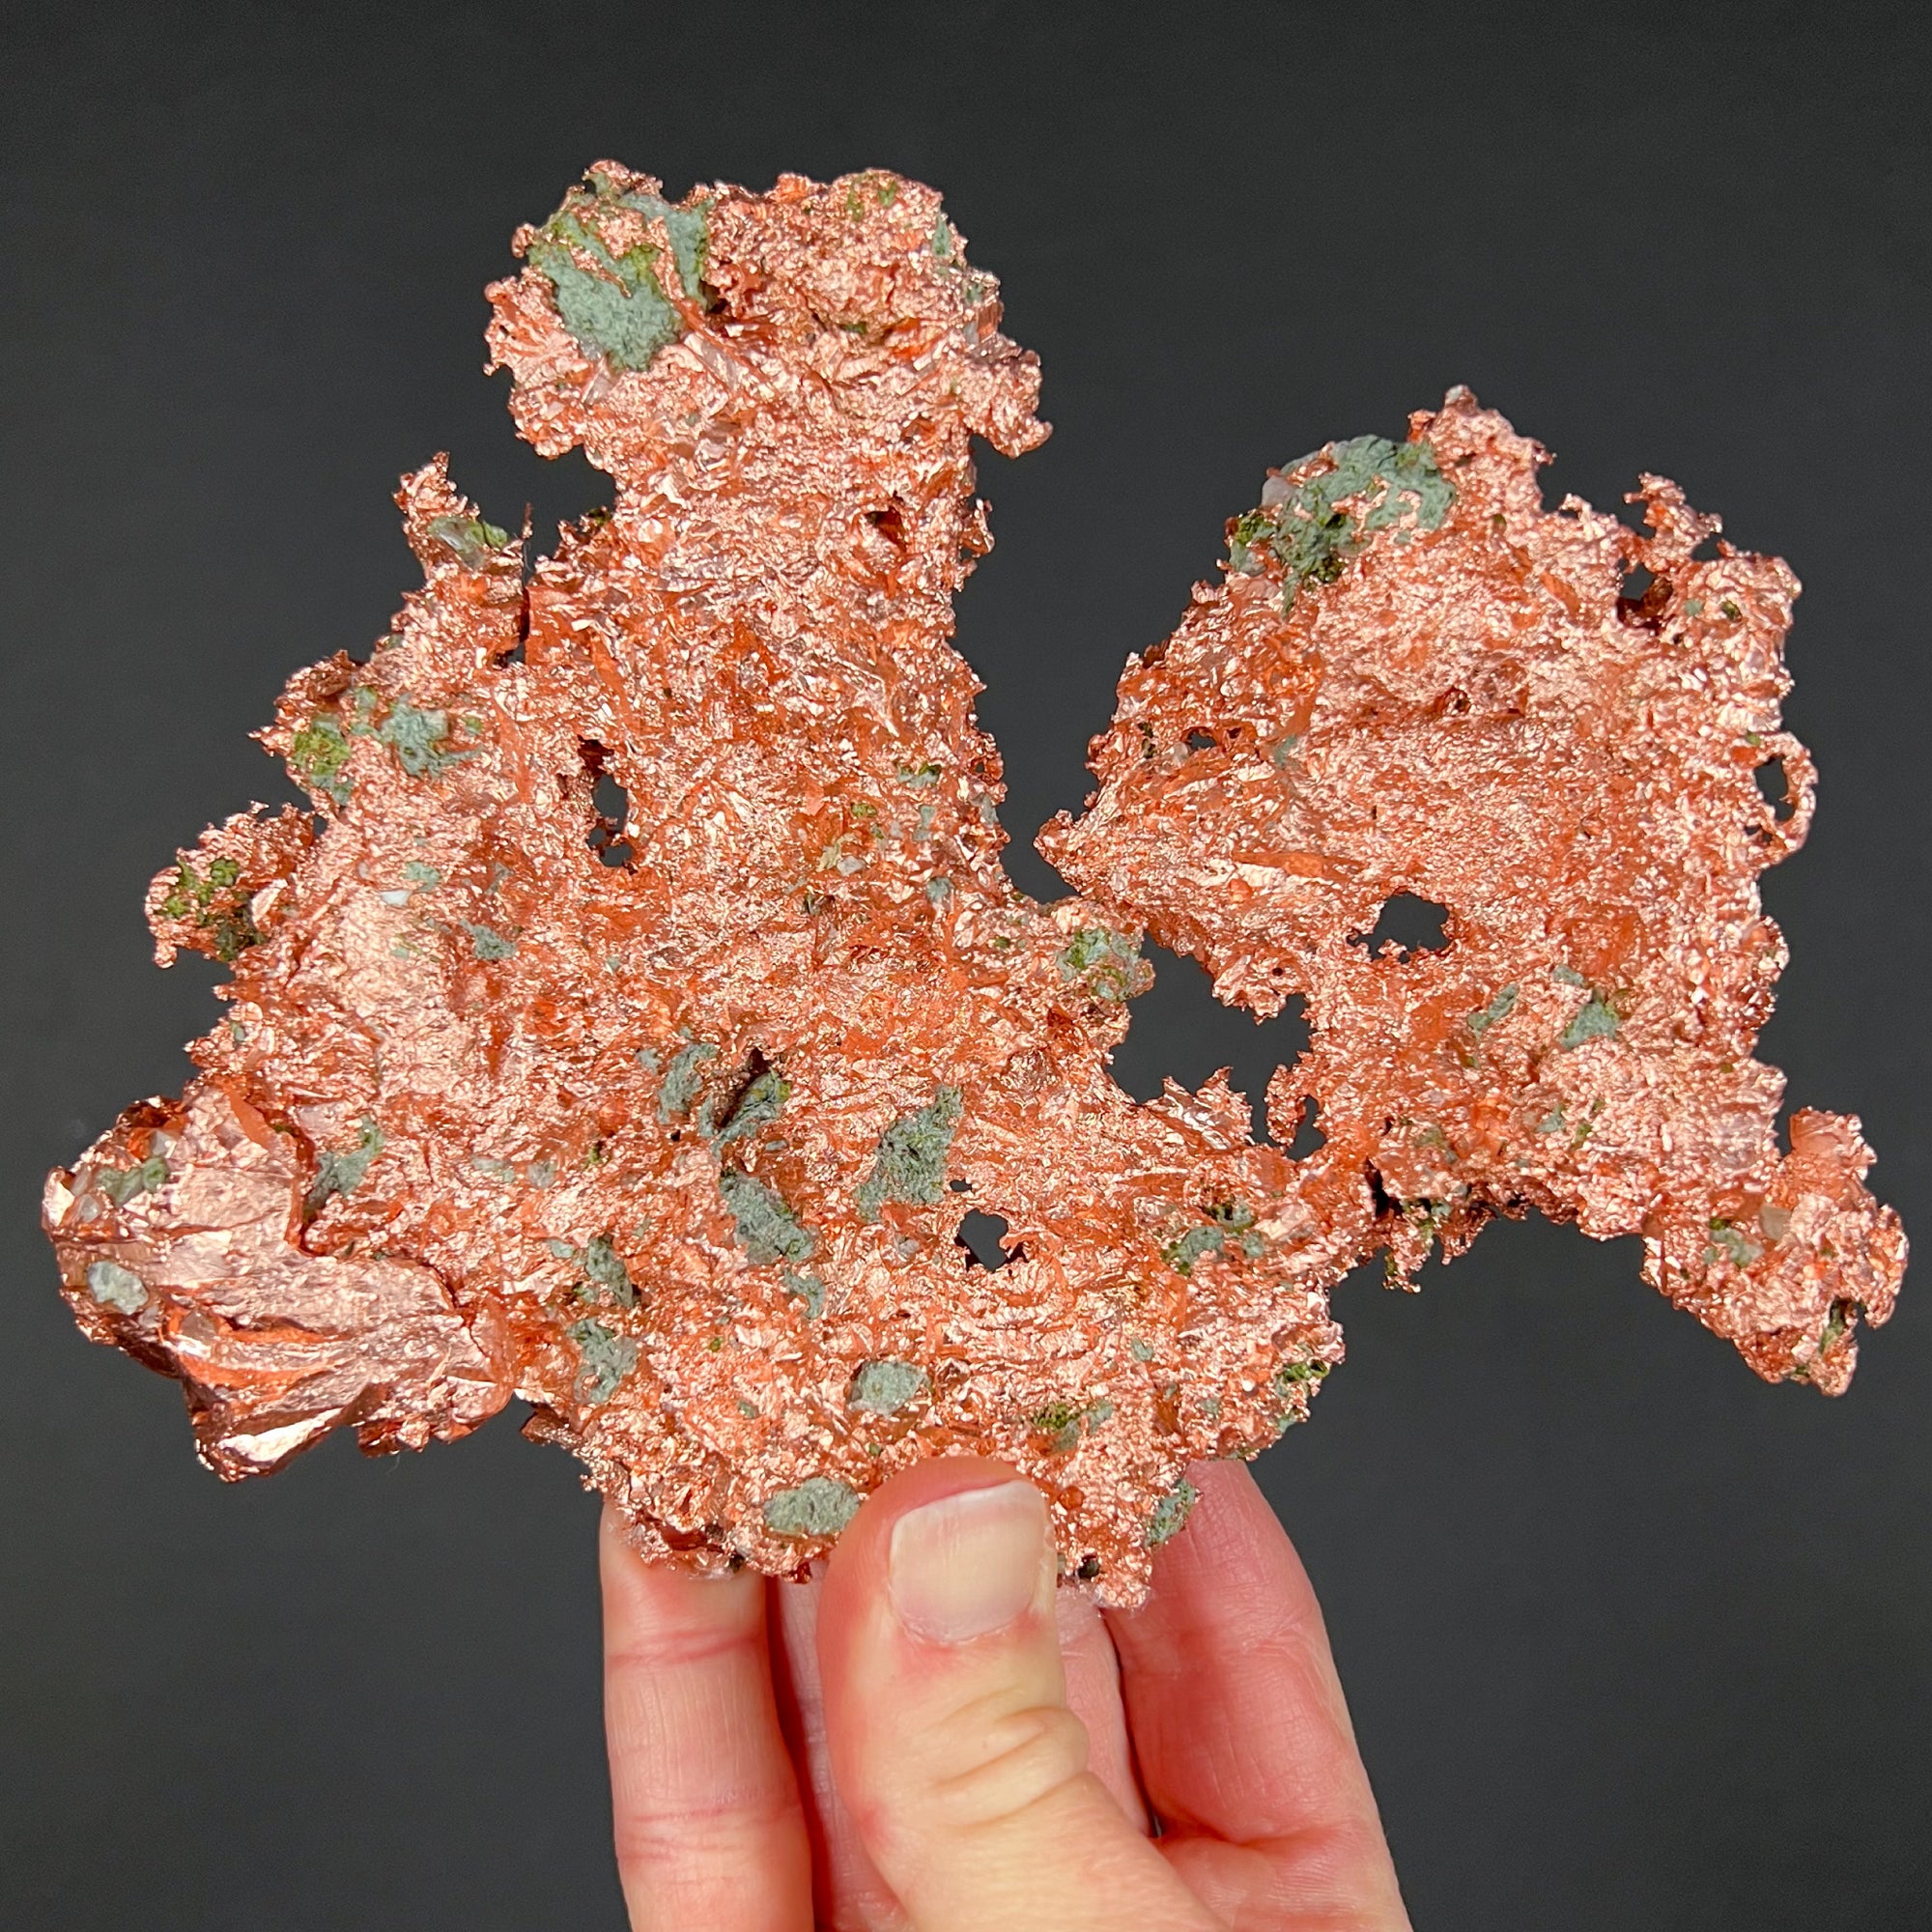 Native Copper Mineral Specimen from Michigan